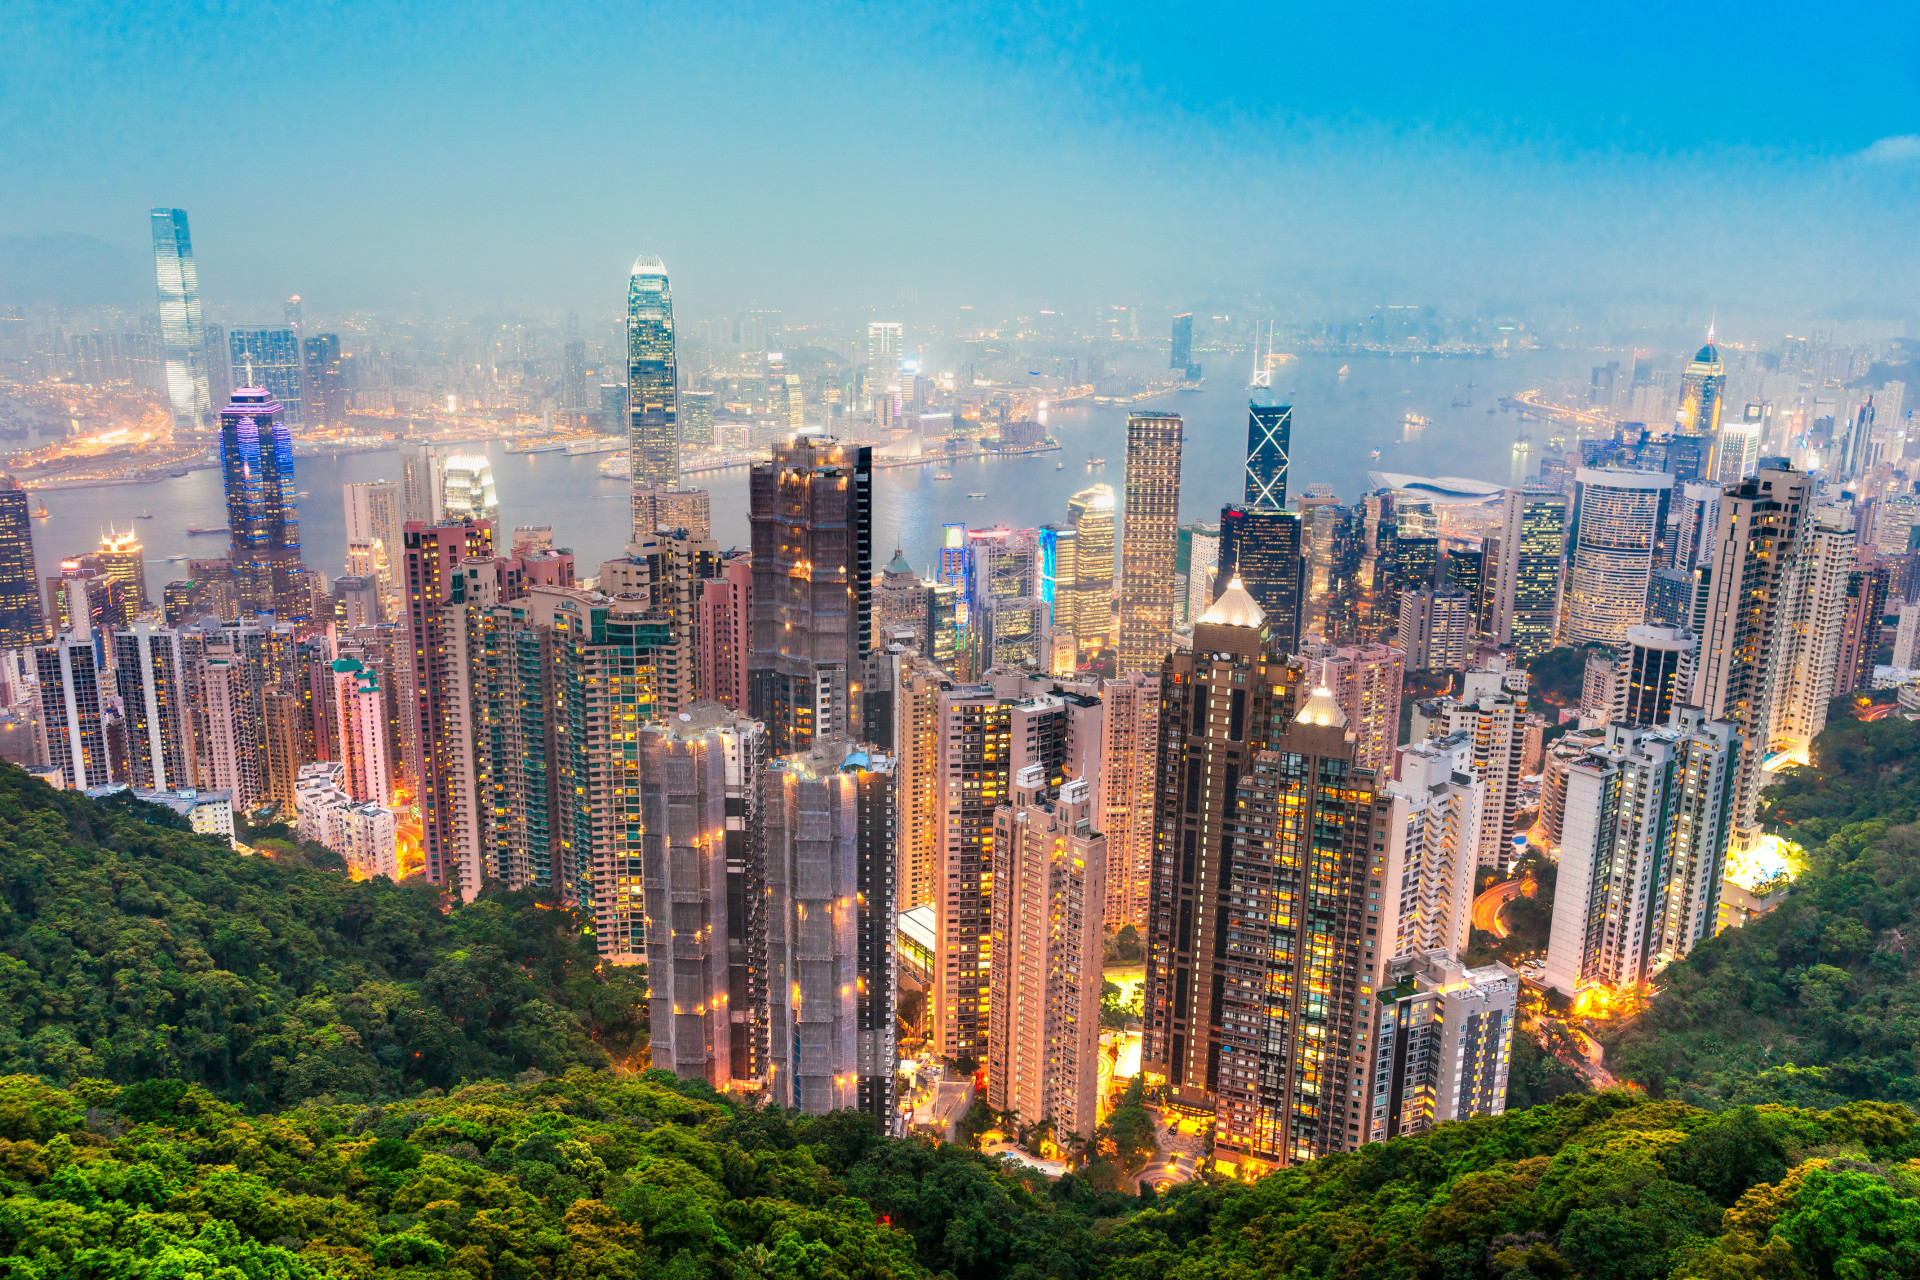 L'incroyable architecture de Hong Kong place la ville en première position. Avec ses plus de 7 000 gratte-ciel, dont 4 font partie des 20 plus hauts du monde, et avec son arrière-plan montagneux, la vue y est mémorable.<p><a href="https://www.msn.com/fr-ca/community/channel/vid-7xx8mnucu55yw63we9va2gwr7uihbxwc68fxqp25x6tg4ftibpra?cvid=94631541bc0f4f89bfd59158d696ad7e">Suivez-nous et accédez tous les jours à du contenu exclusif</a></p>